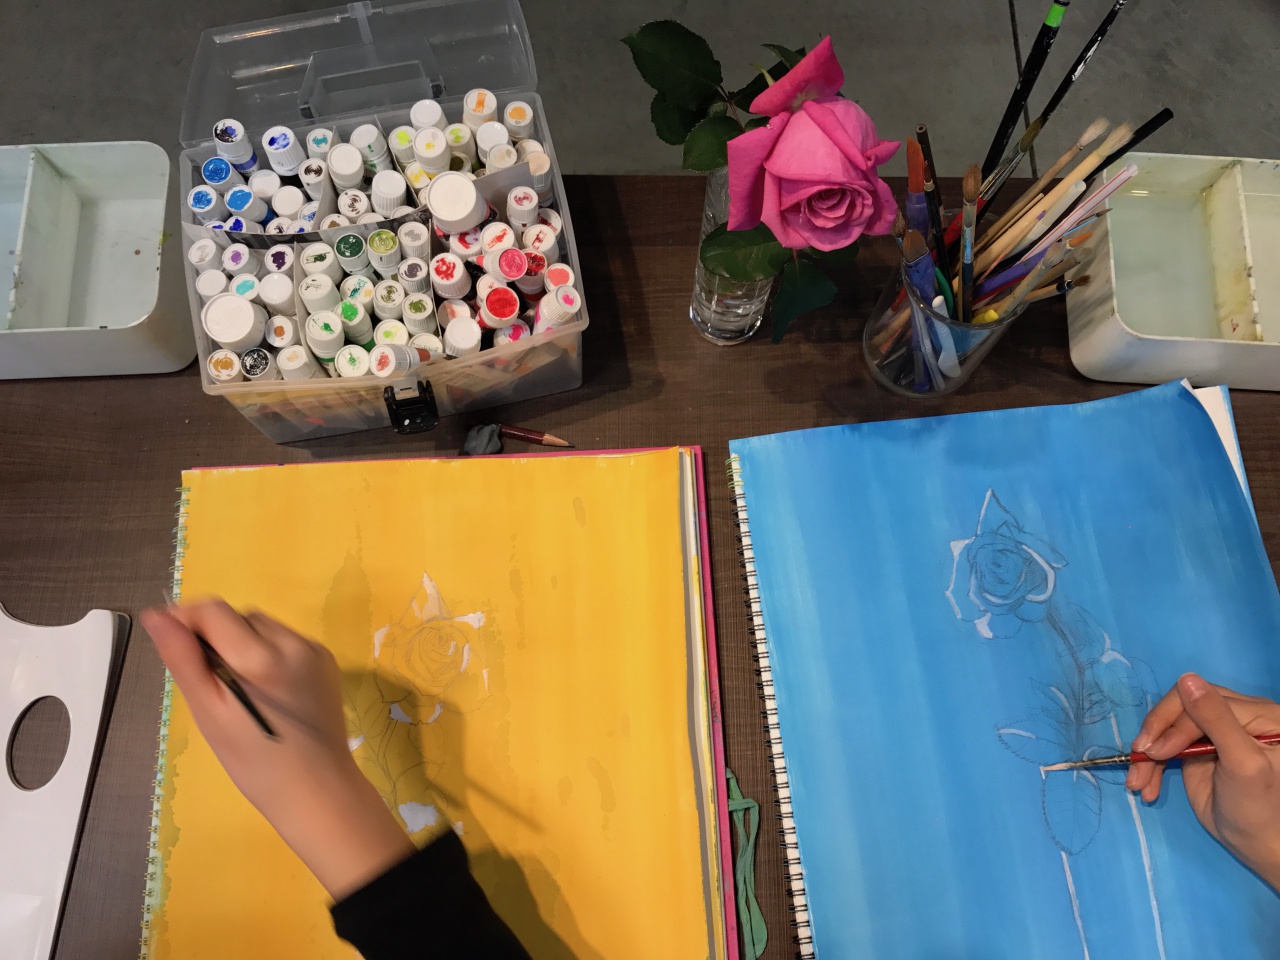 絵画教室ブログ バラを描きました 小学生の生徒さん ブログ 名古屋市千種区 基礎のデッサン 水彩画から洋画 油彩画 日本画まで